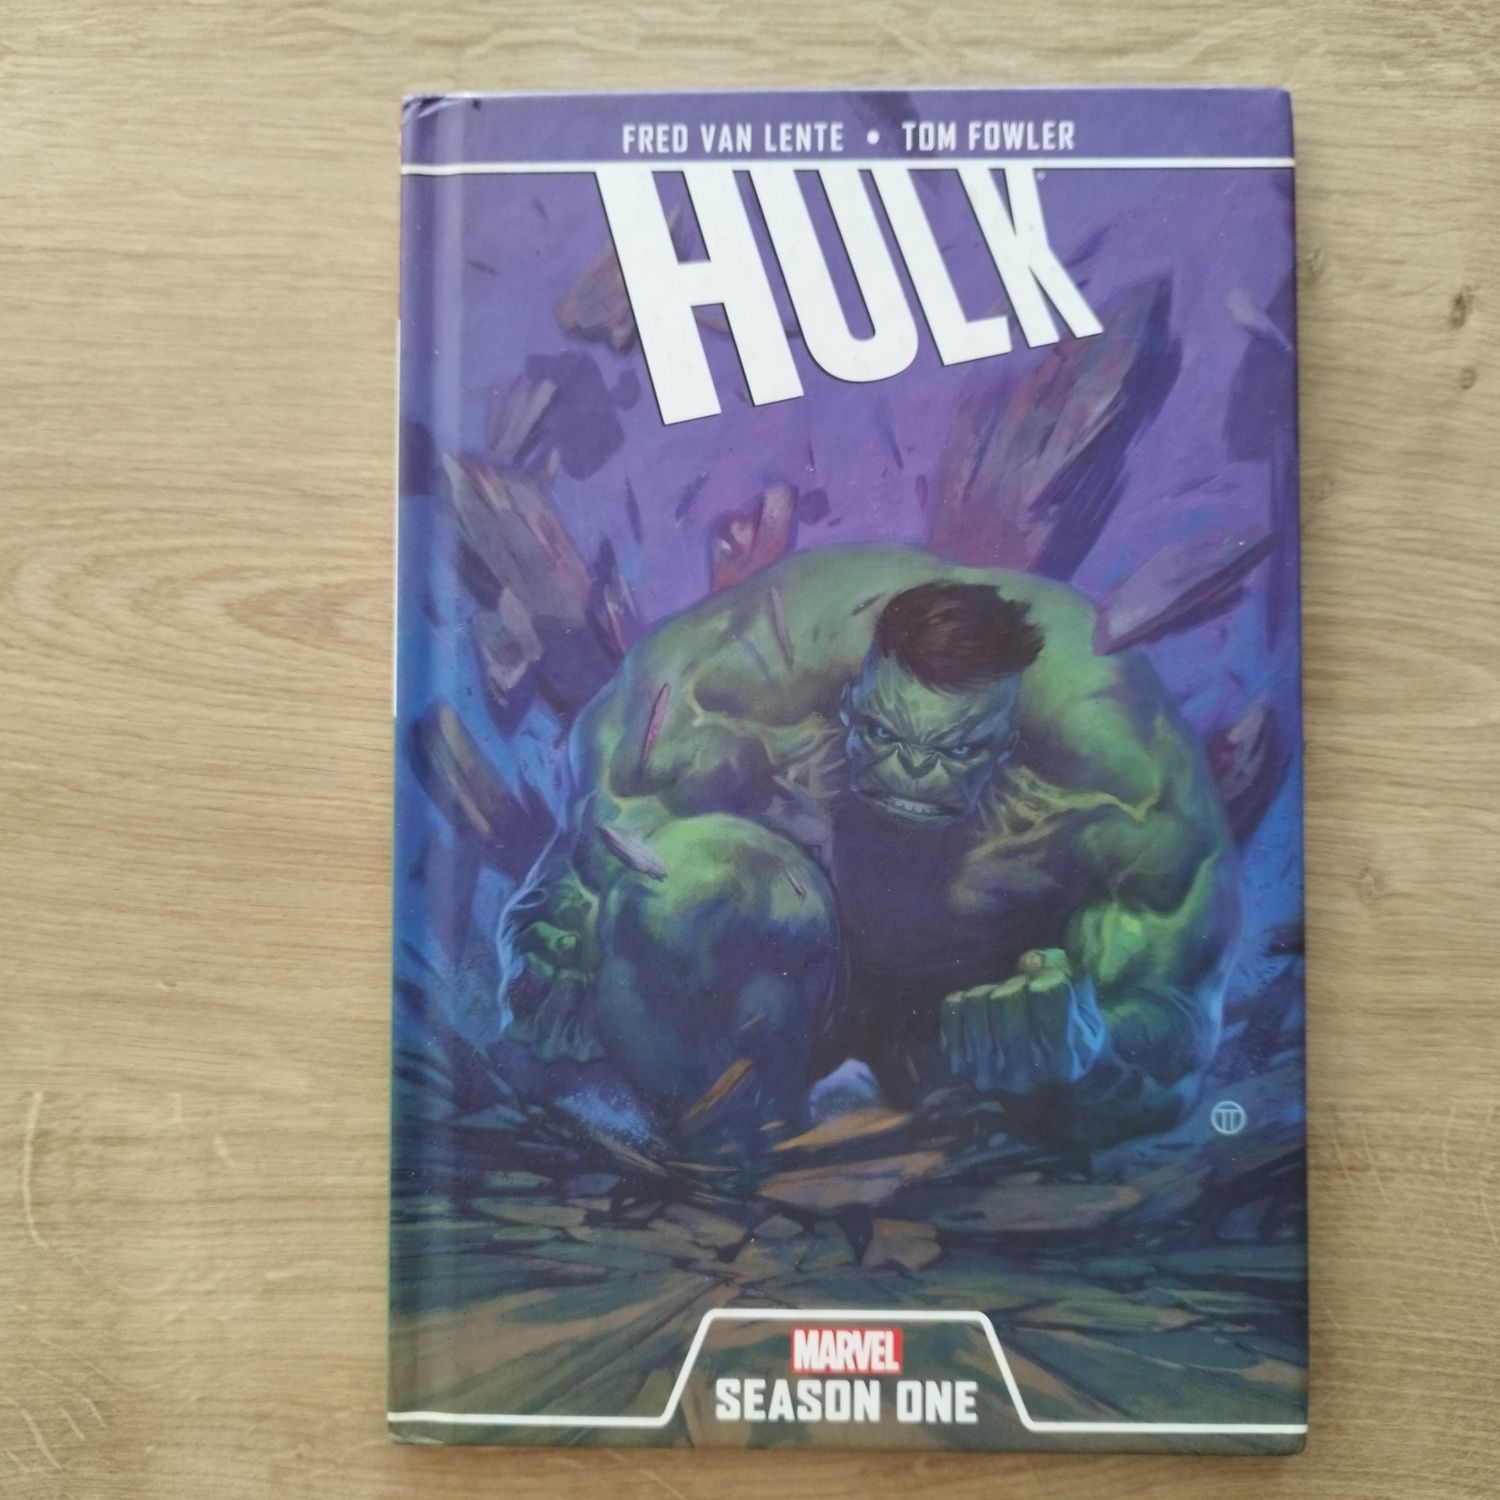 Hulk season one w twardej oprawie